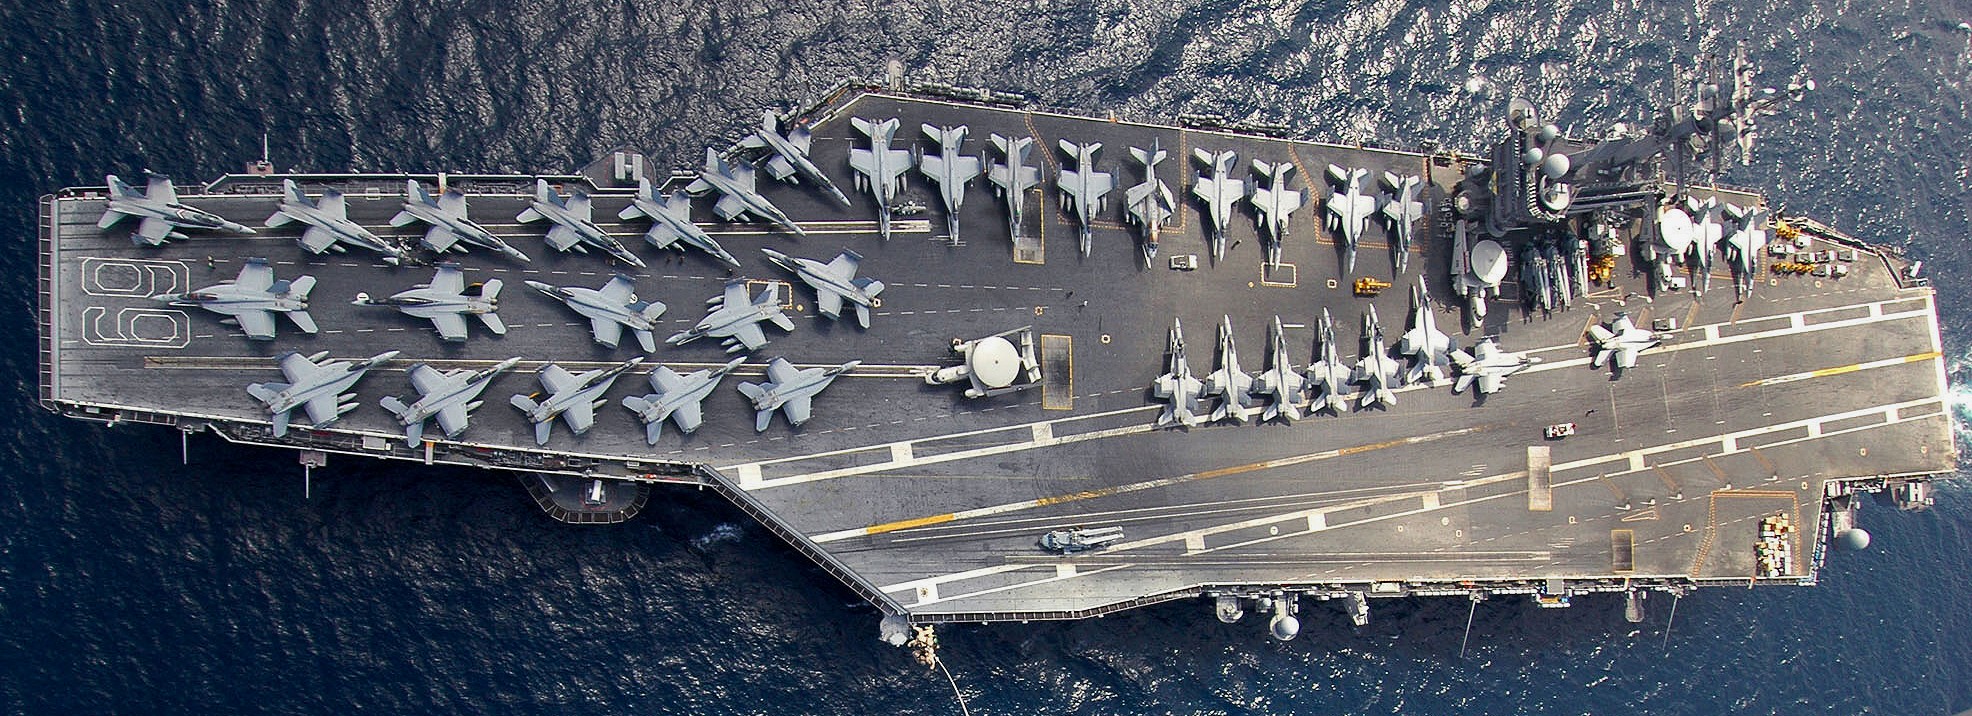 cvn-69 uss dwight d. eisenhower aircraft carrier air wing cvw-7 us navy 385